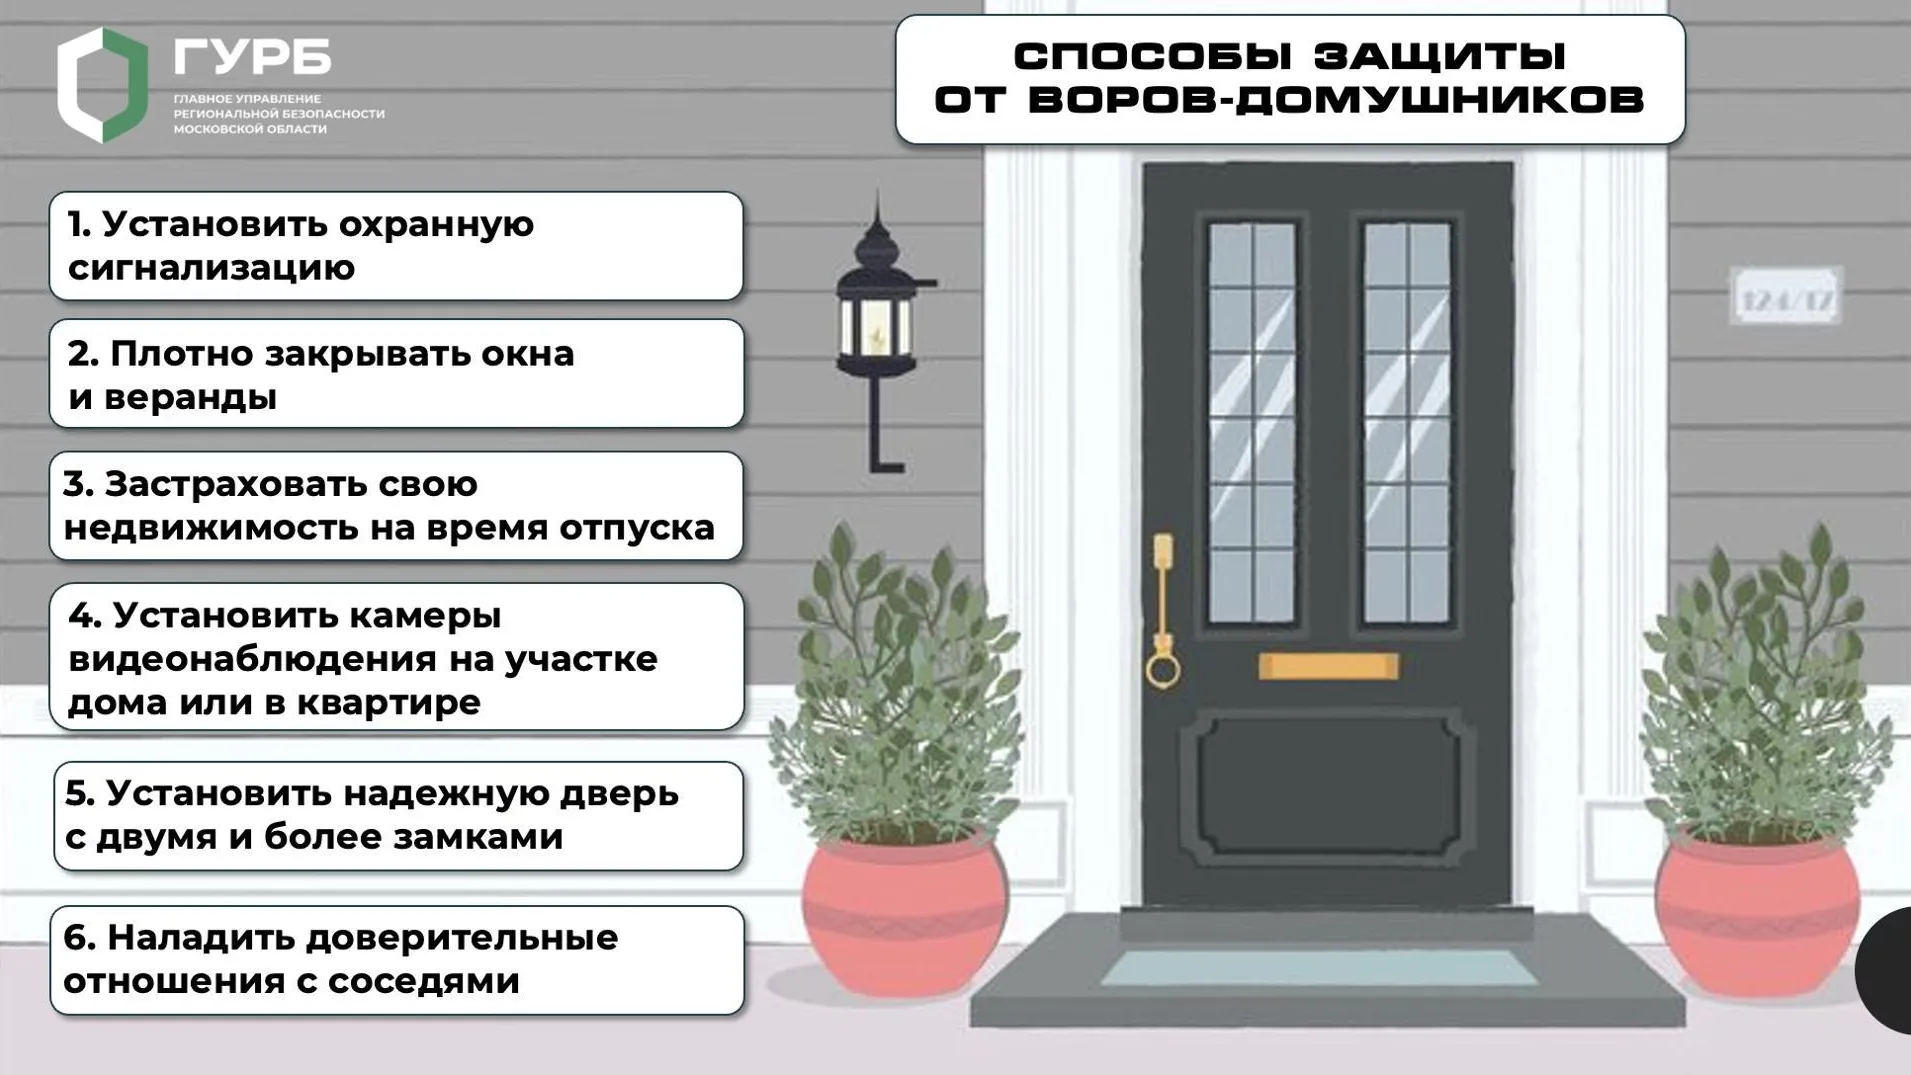 Жителям Подмосковья рассказали, как обезопасить свой дом в летний сезон отпусков